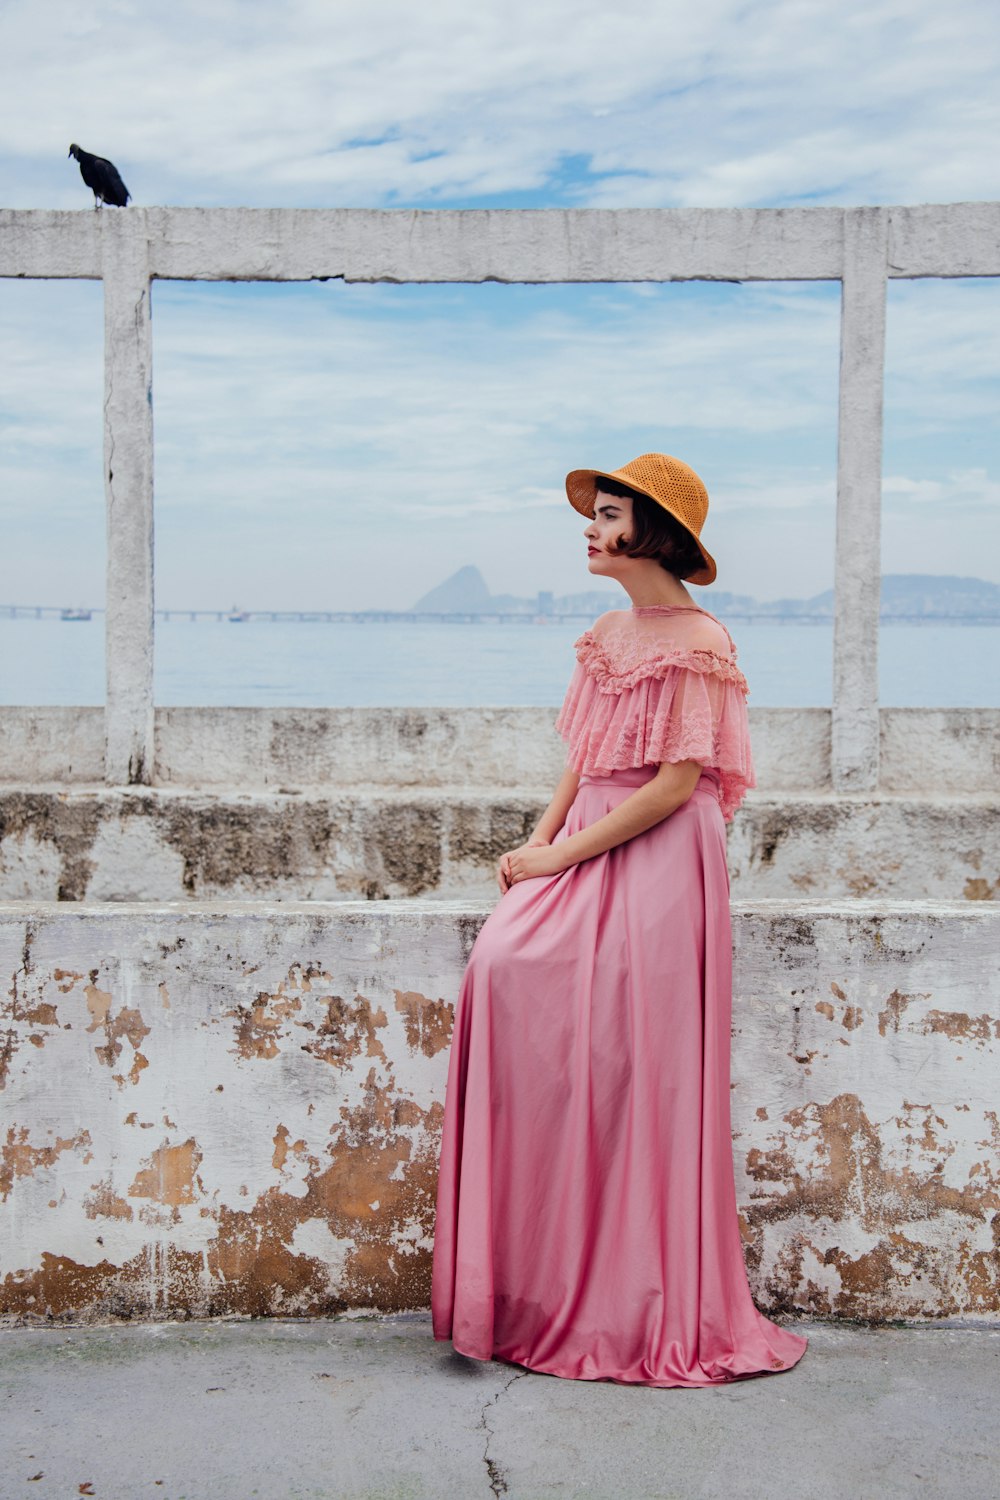 donna che indossa il vestito rosa in piedi accanto al muro bianco